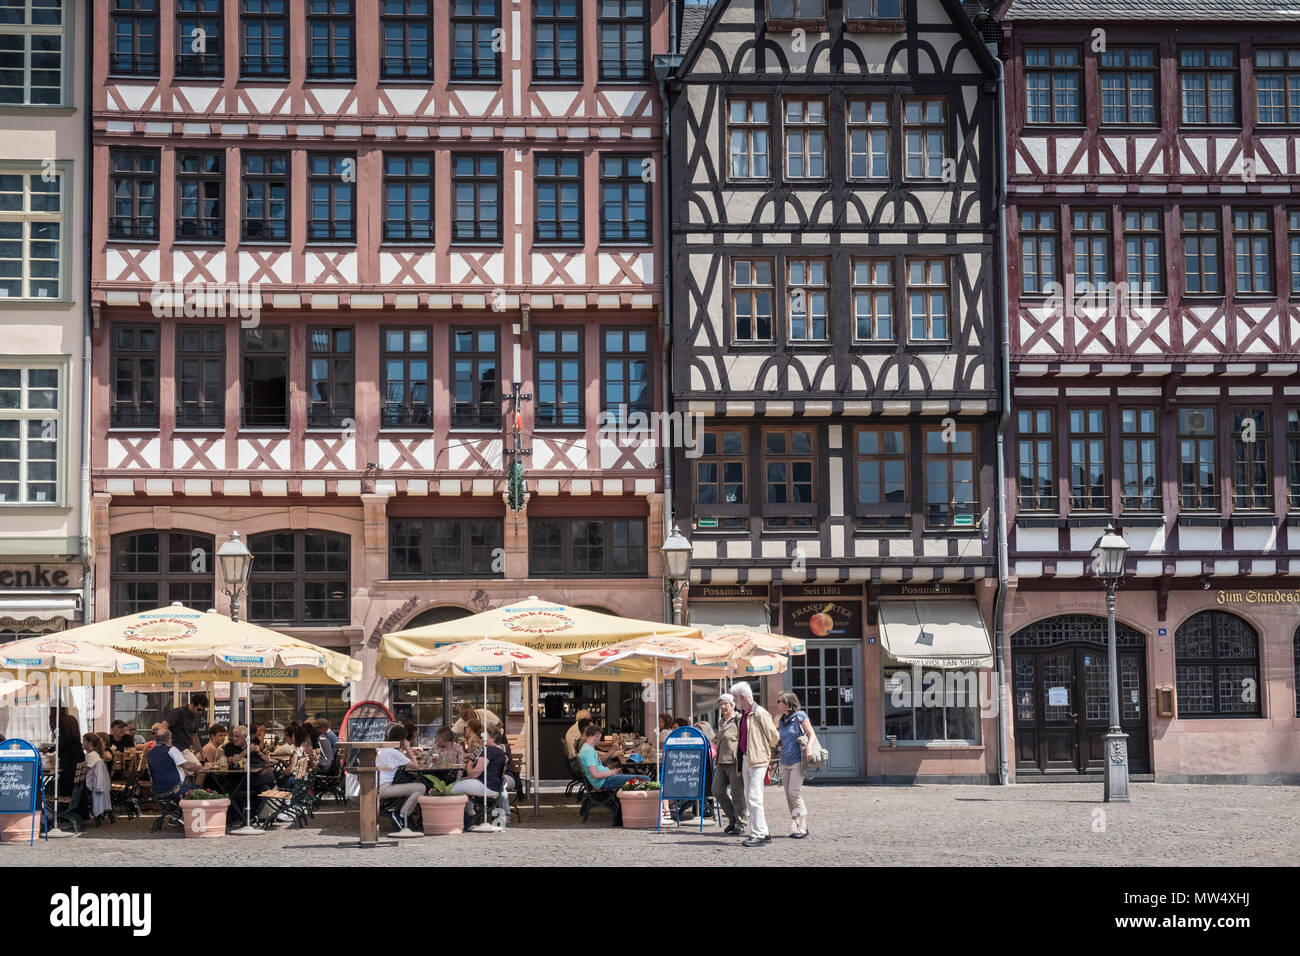 Traditionelle Fachwerkhaus Gebäude, Teil der Restaurierungsarbeiten in der historischen Altstadt (Altstadt), Römerberg, Frankfurt am Main, Hessen, Deutschland. Stockfoto